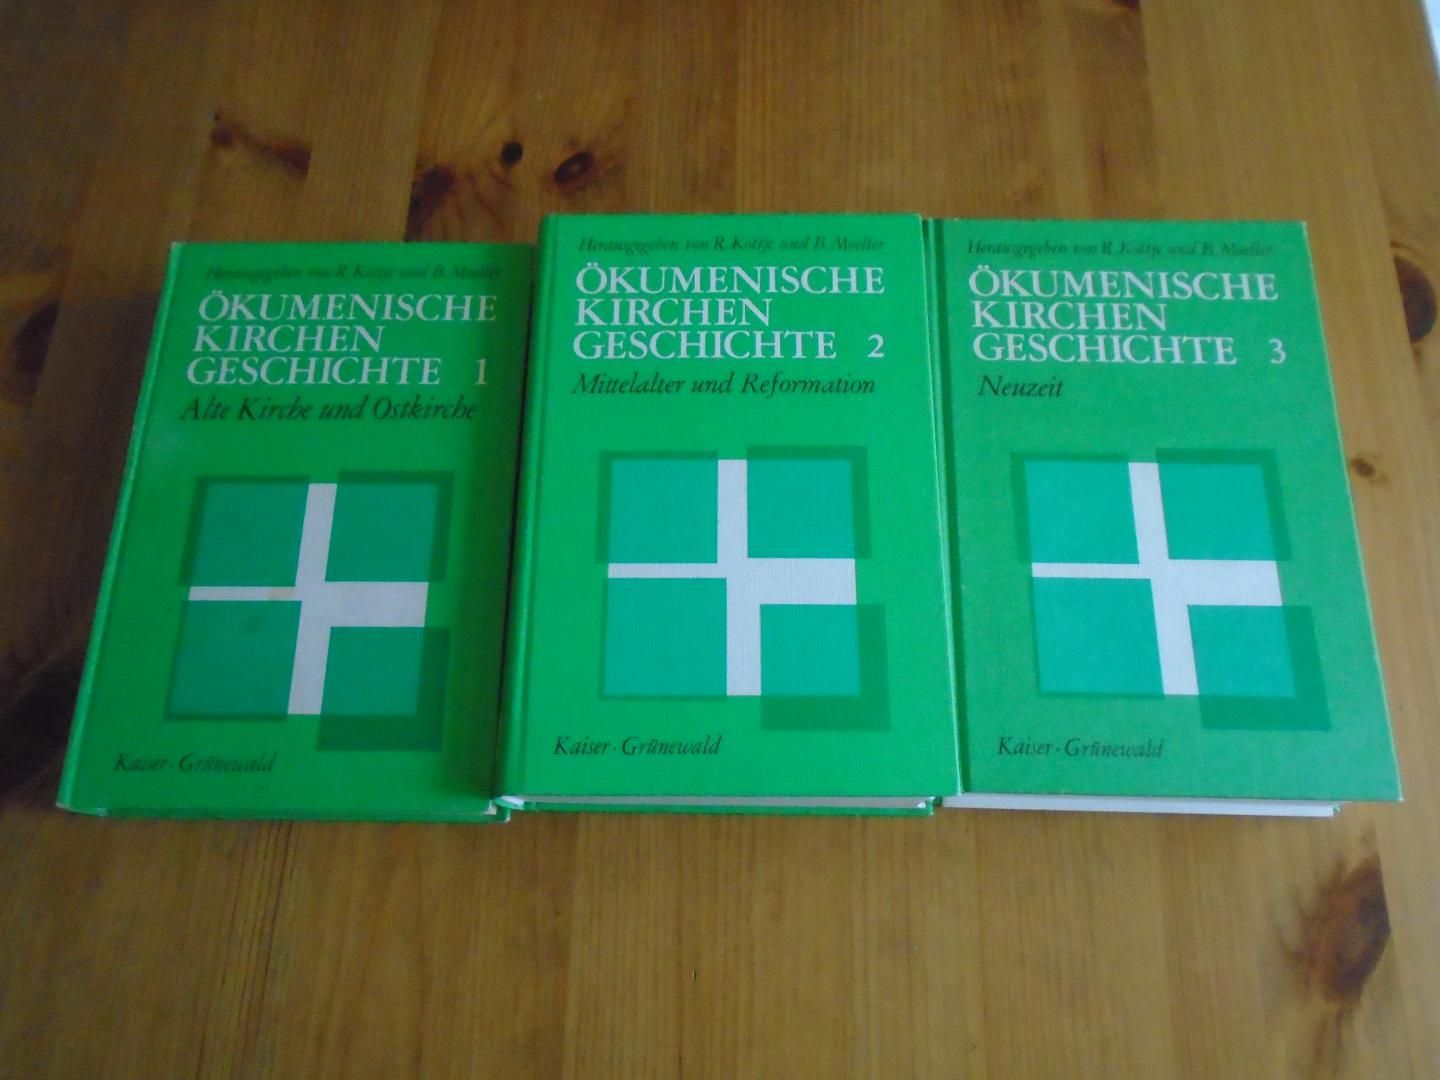 Kottje, R. / B. Moeller - Ökumenische Kirchengeschichte. 1. Alte Kirche und Ostkirche; 2. Mittelalter und Reformation; 3. Neuzeit